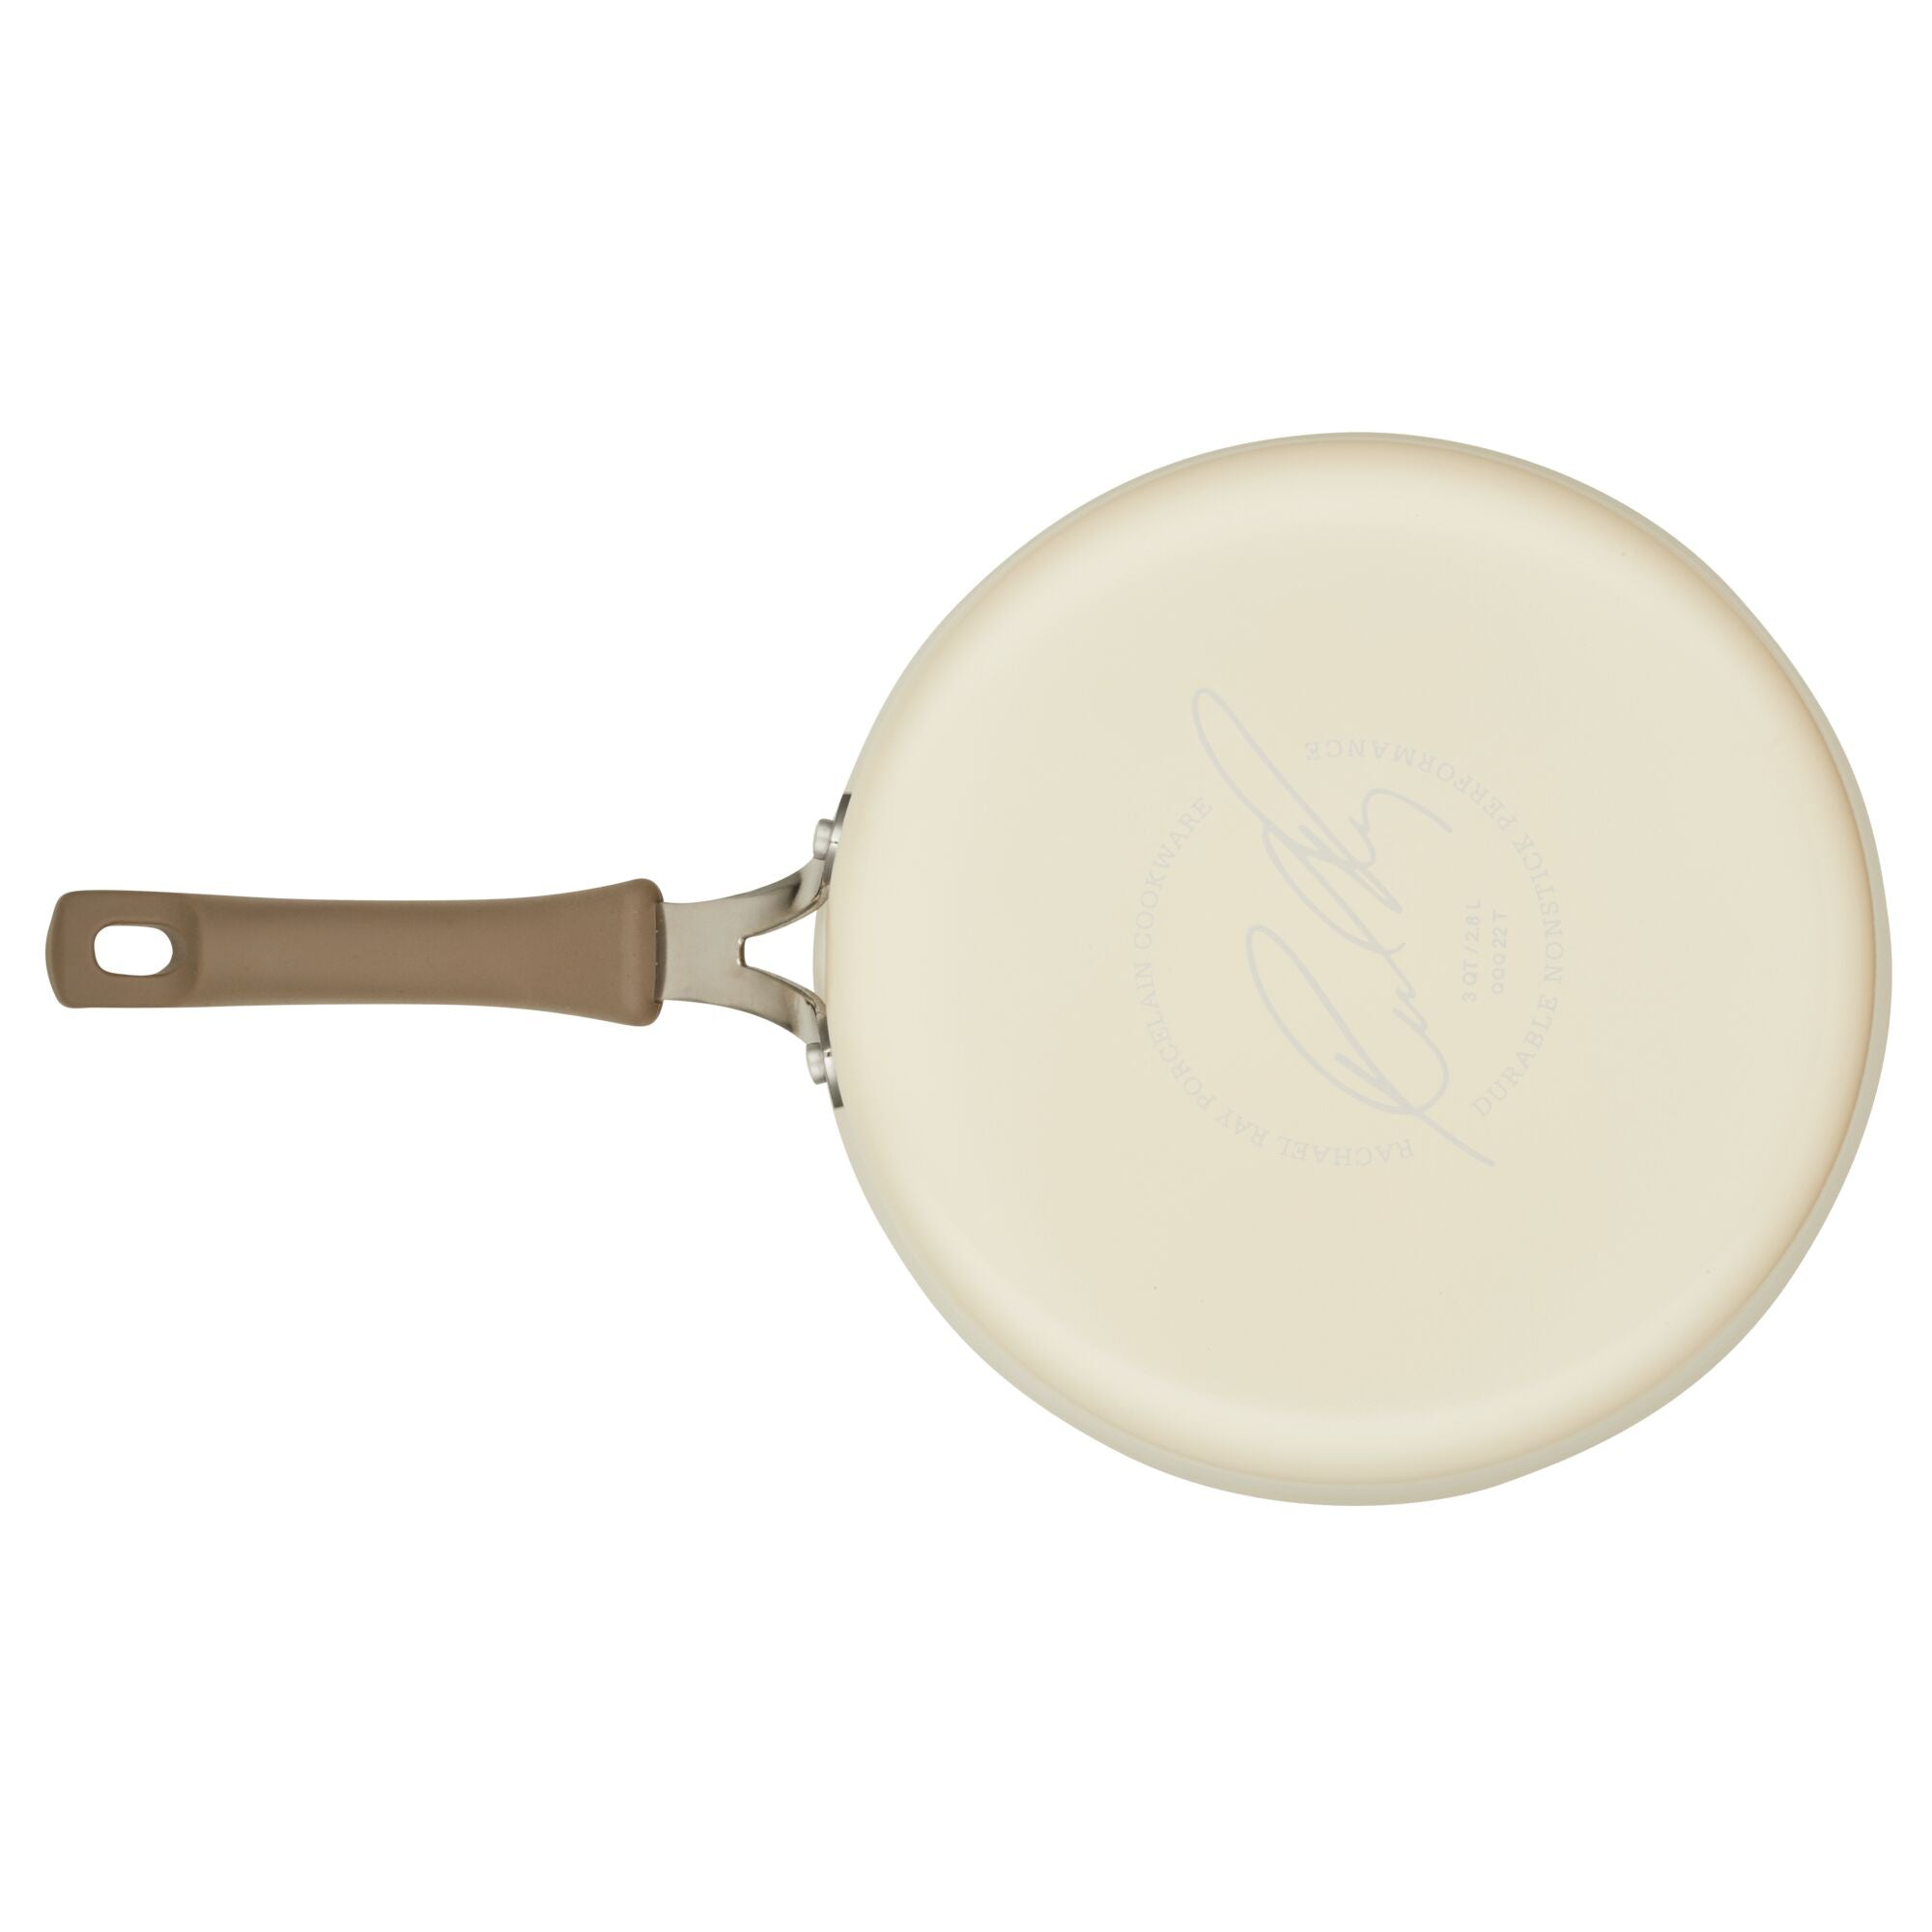 Hard-Anodized Nonstick 3-Quart Saute Pan with Lid – PotsandPans